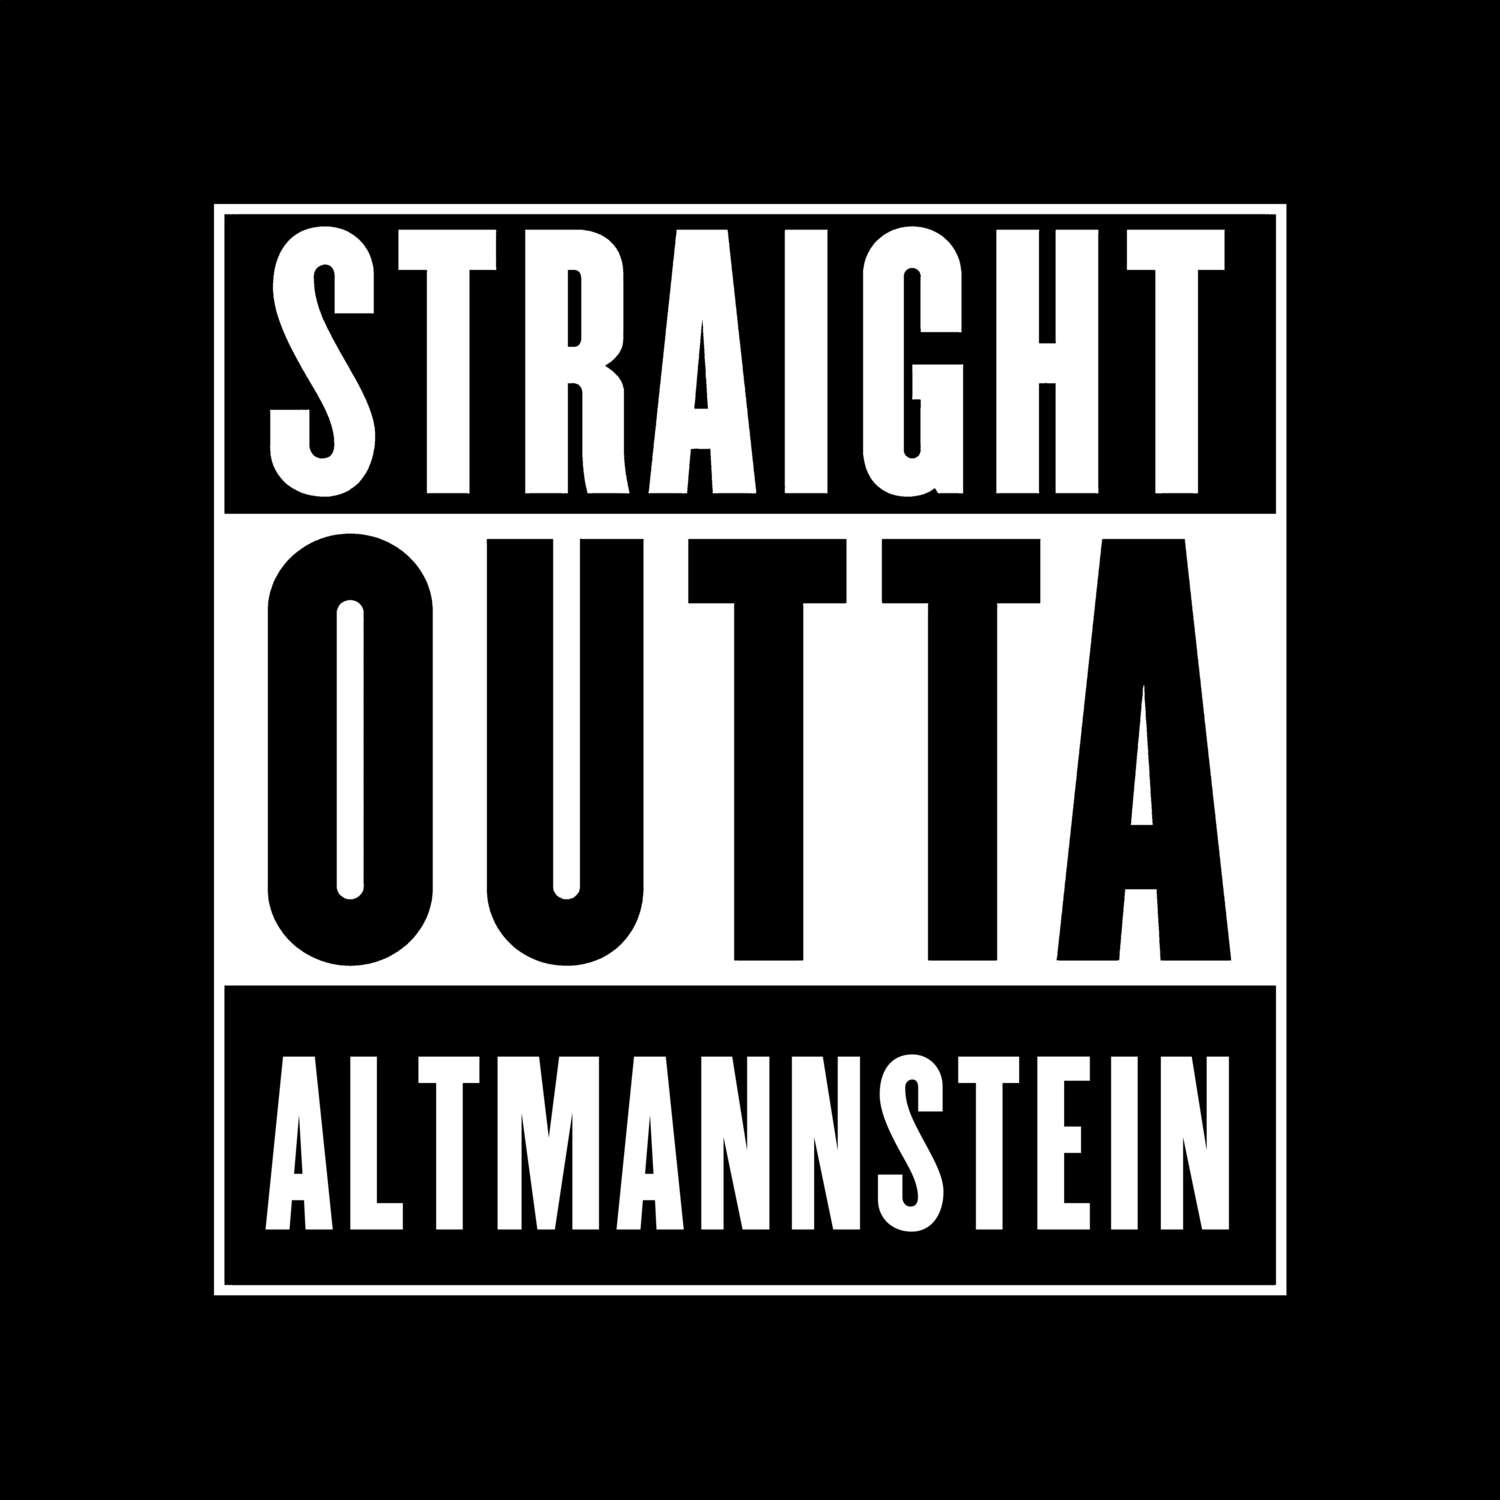 Altmannstein T-Shirt »Straight Outta«